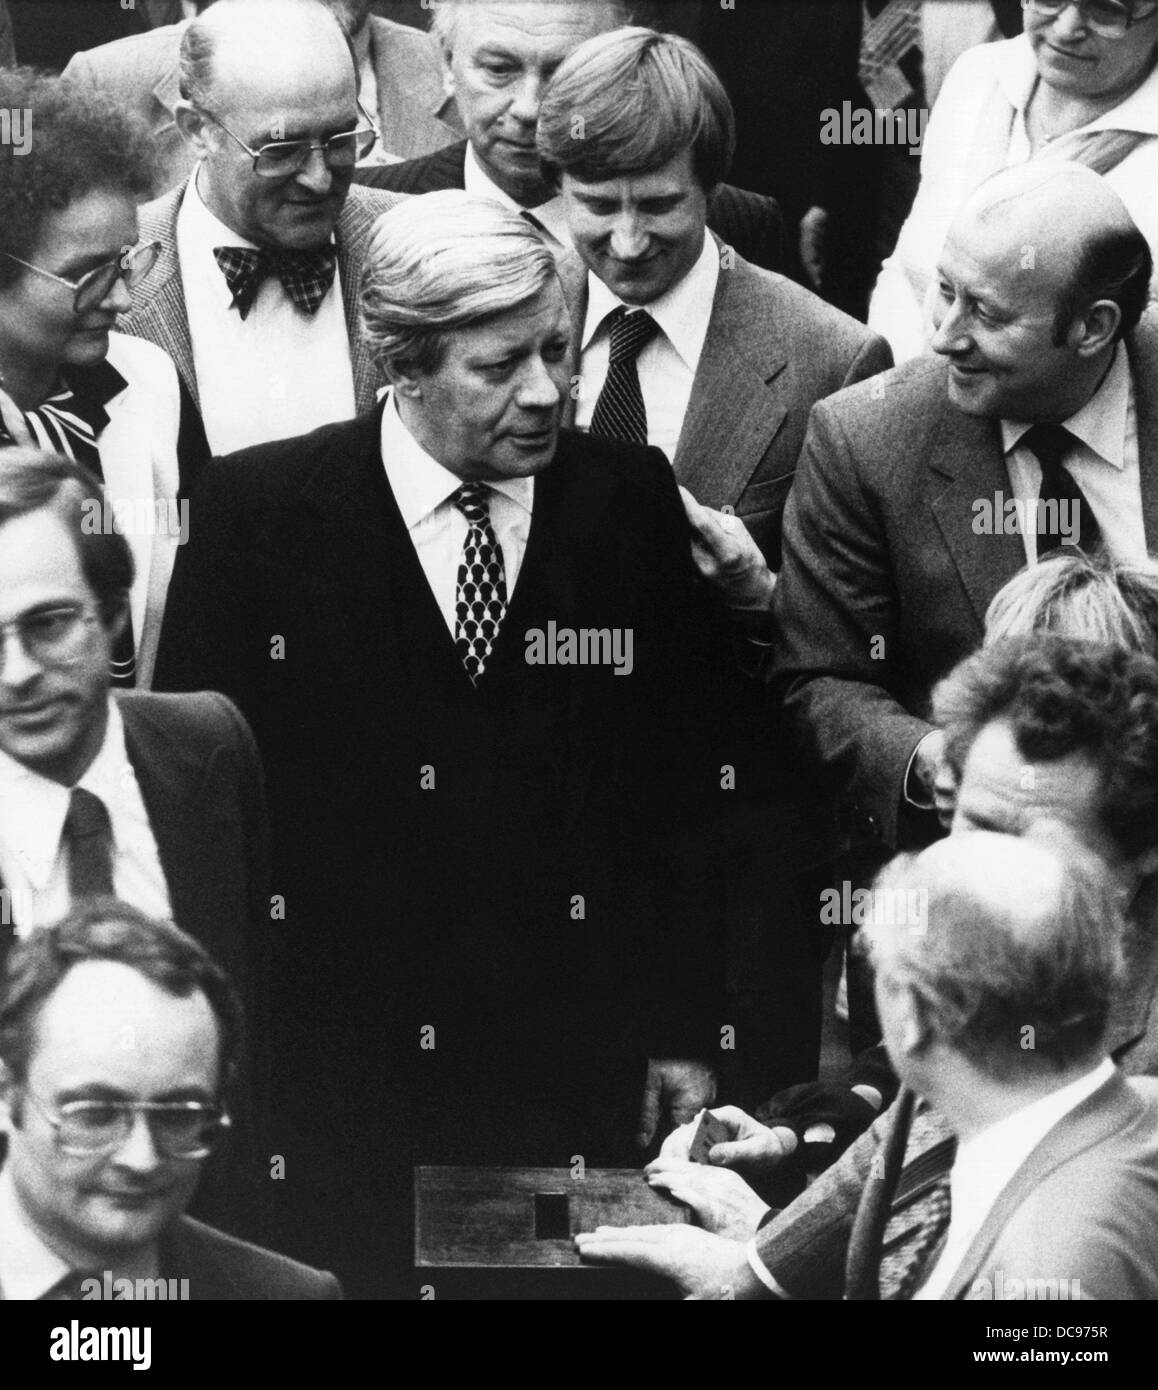 Il cancelliere tedesco Helmut Schmidt è circondato dai membri della fazione SPD nel Bundestag il 23 di Aprile di 1980. Egli ha aperto un dibattito circa la raccomandazione di boicottare i Giochi olimpici di Mosca nel 1980. Foto Stock